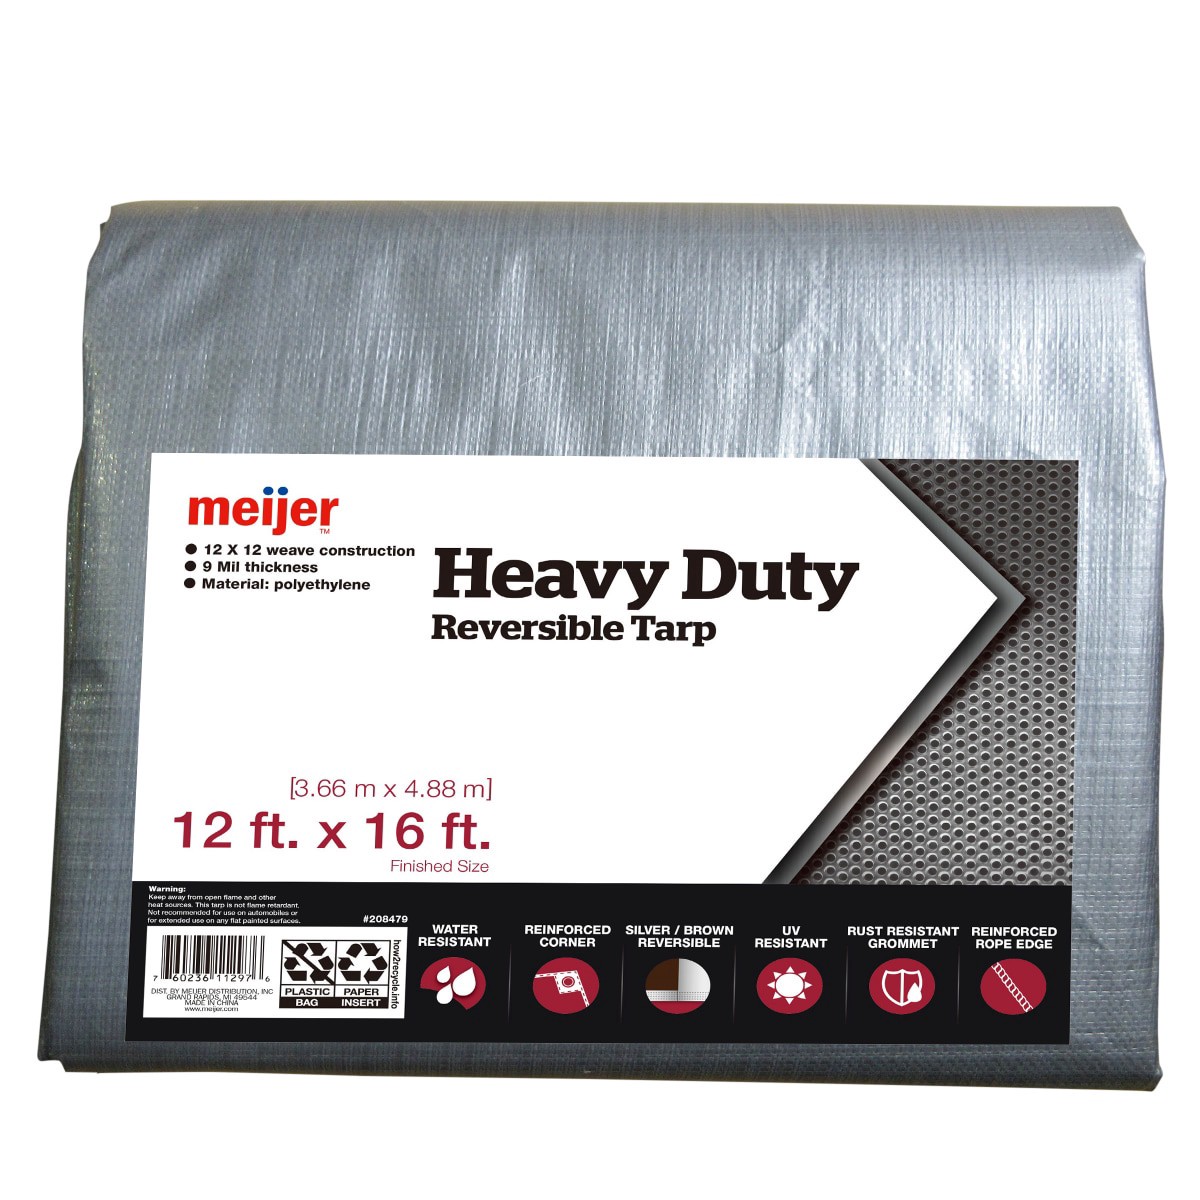 slide 1 of 5, Meijer Heavy Duty Reversible Tarp Silver/Brown, 12' x 16', 12 ftx16 ft